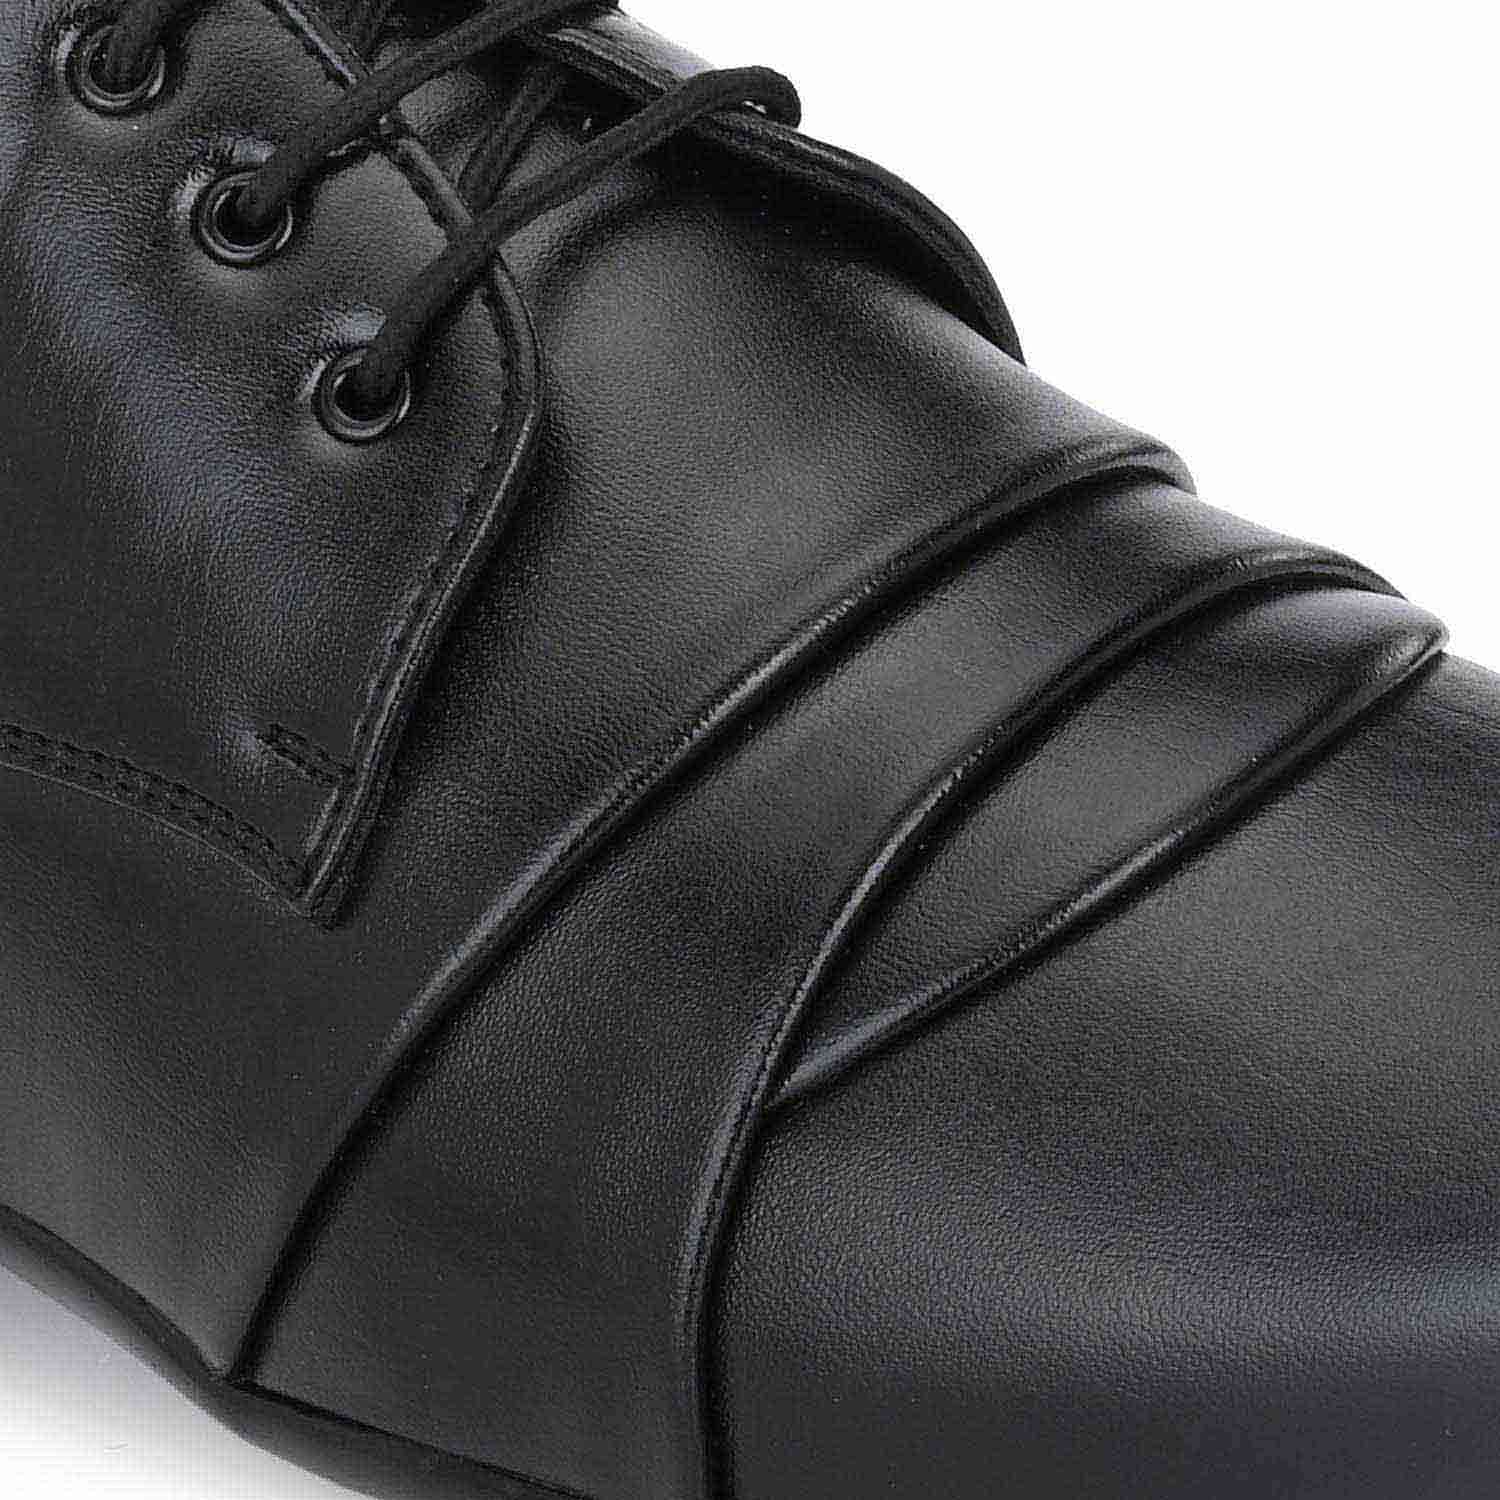 Pair-it Men moccasin Formal Shoes - LZ-RYDER-113 - Black